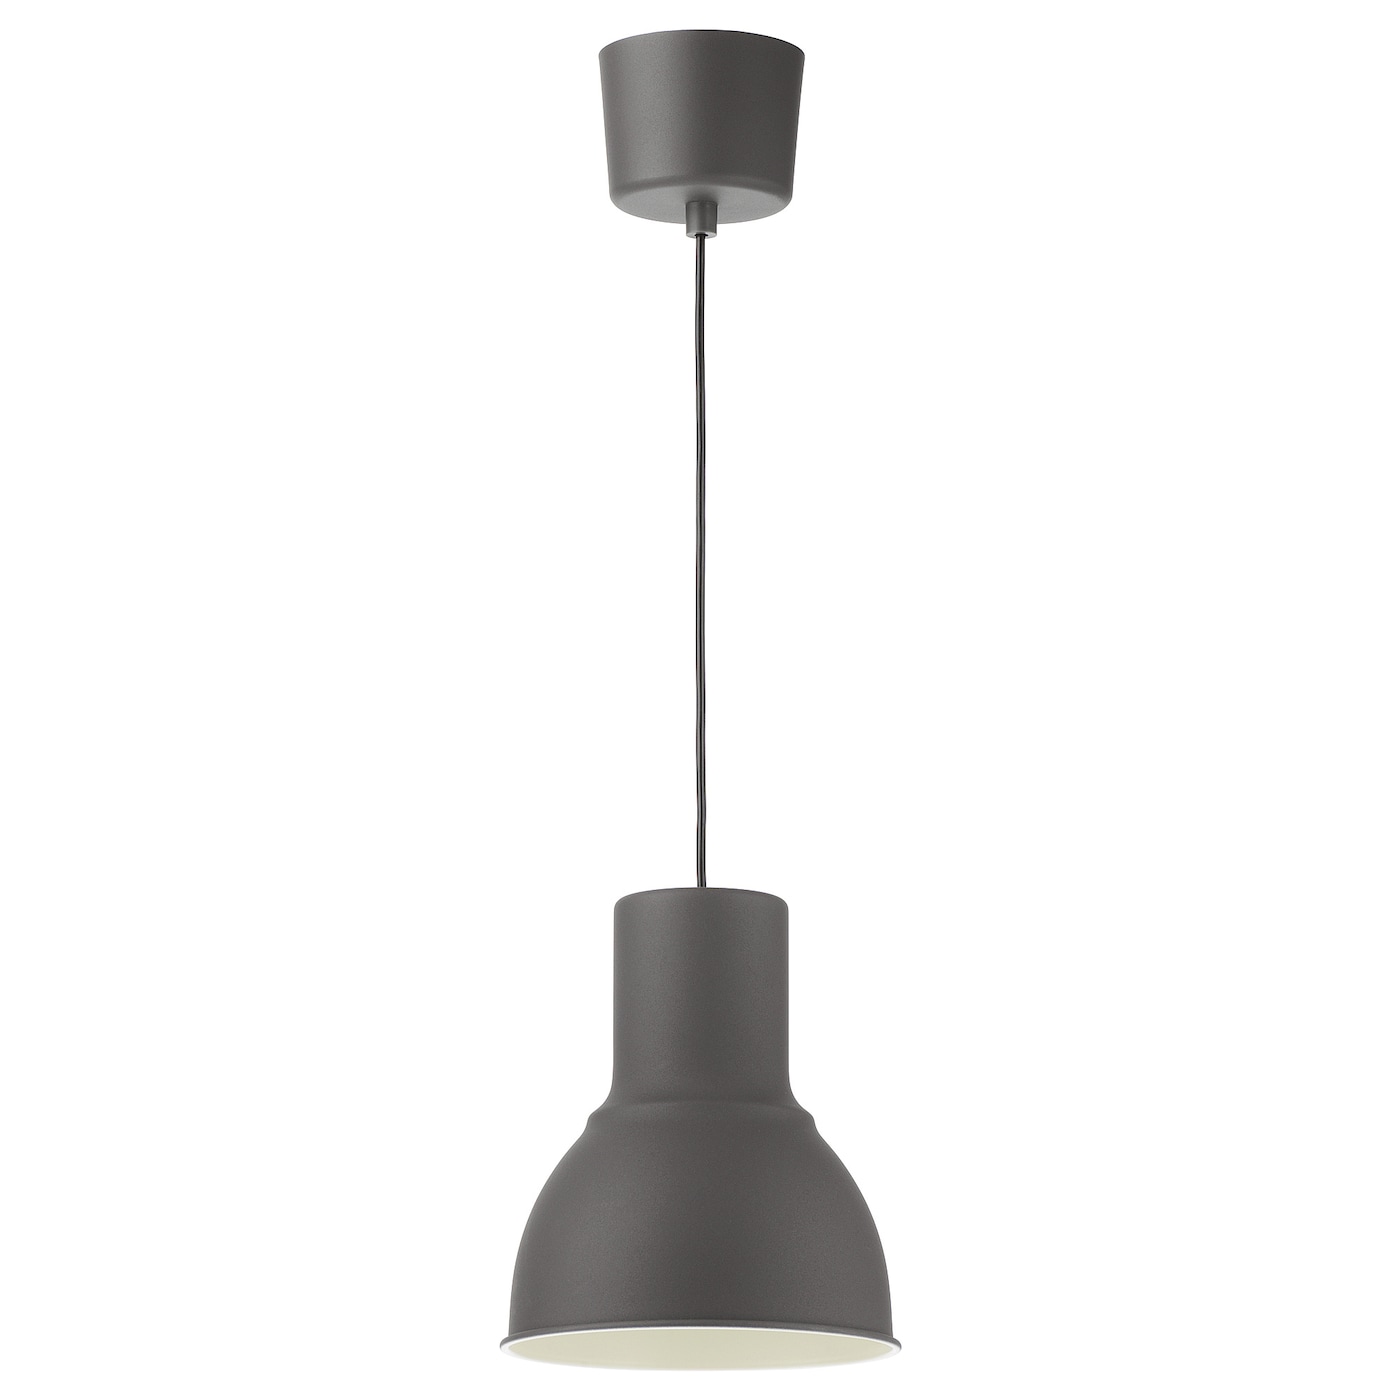 подвесной светильник ikea hektar 47 см темно серый HEKTAR ХЕКТАР Подвесной светильник, темно-серый, 22 см IKEA